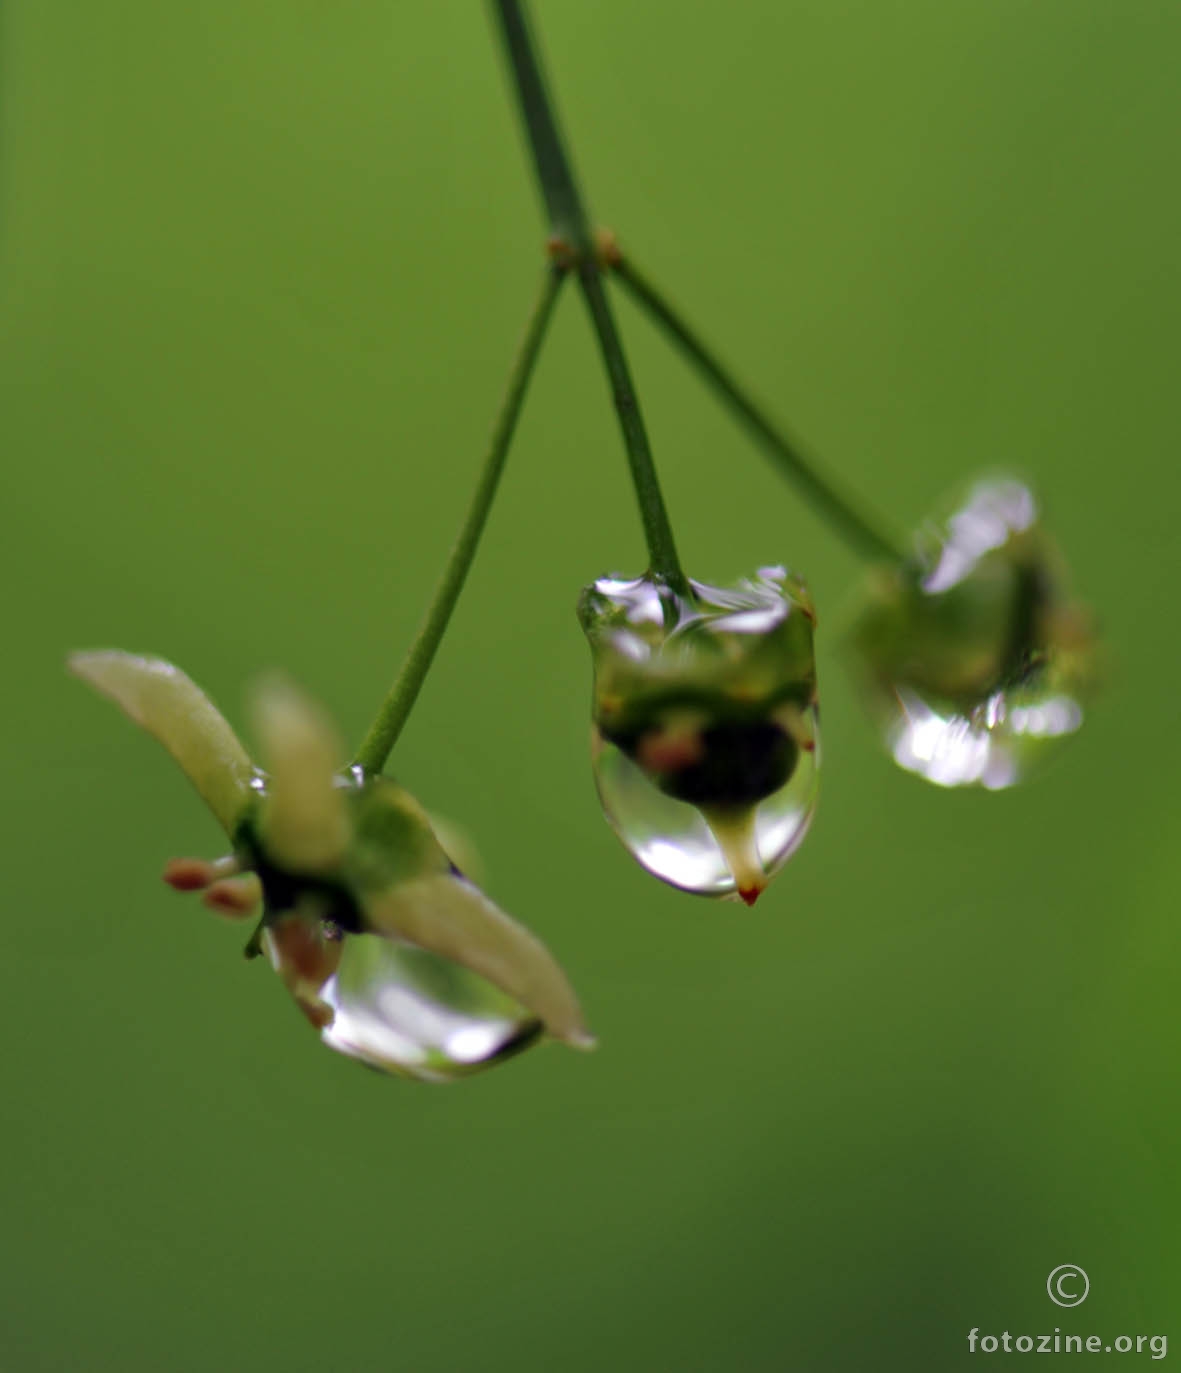 cvjetić zarobljen u kapima kiše